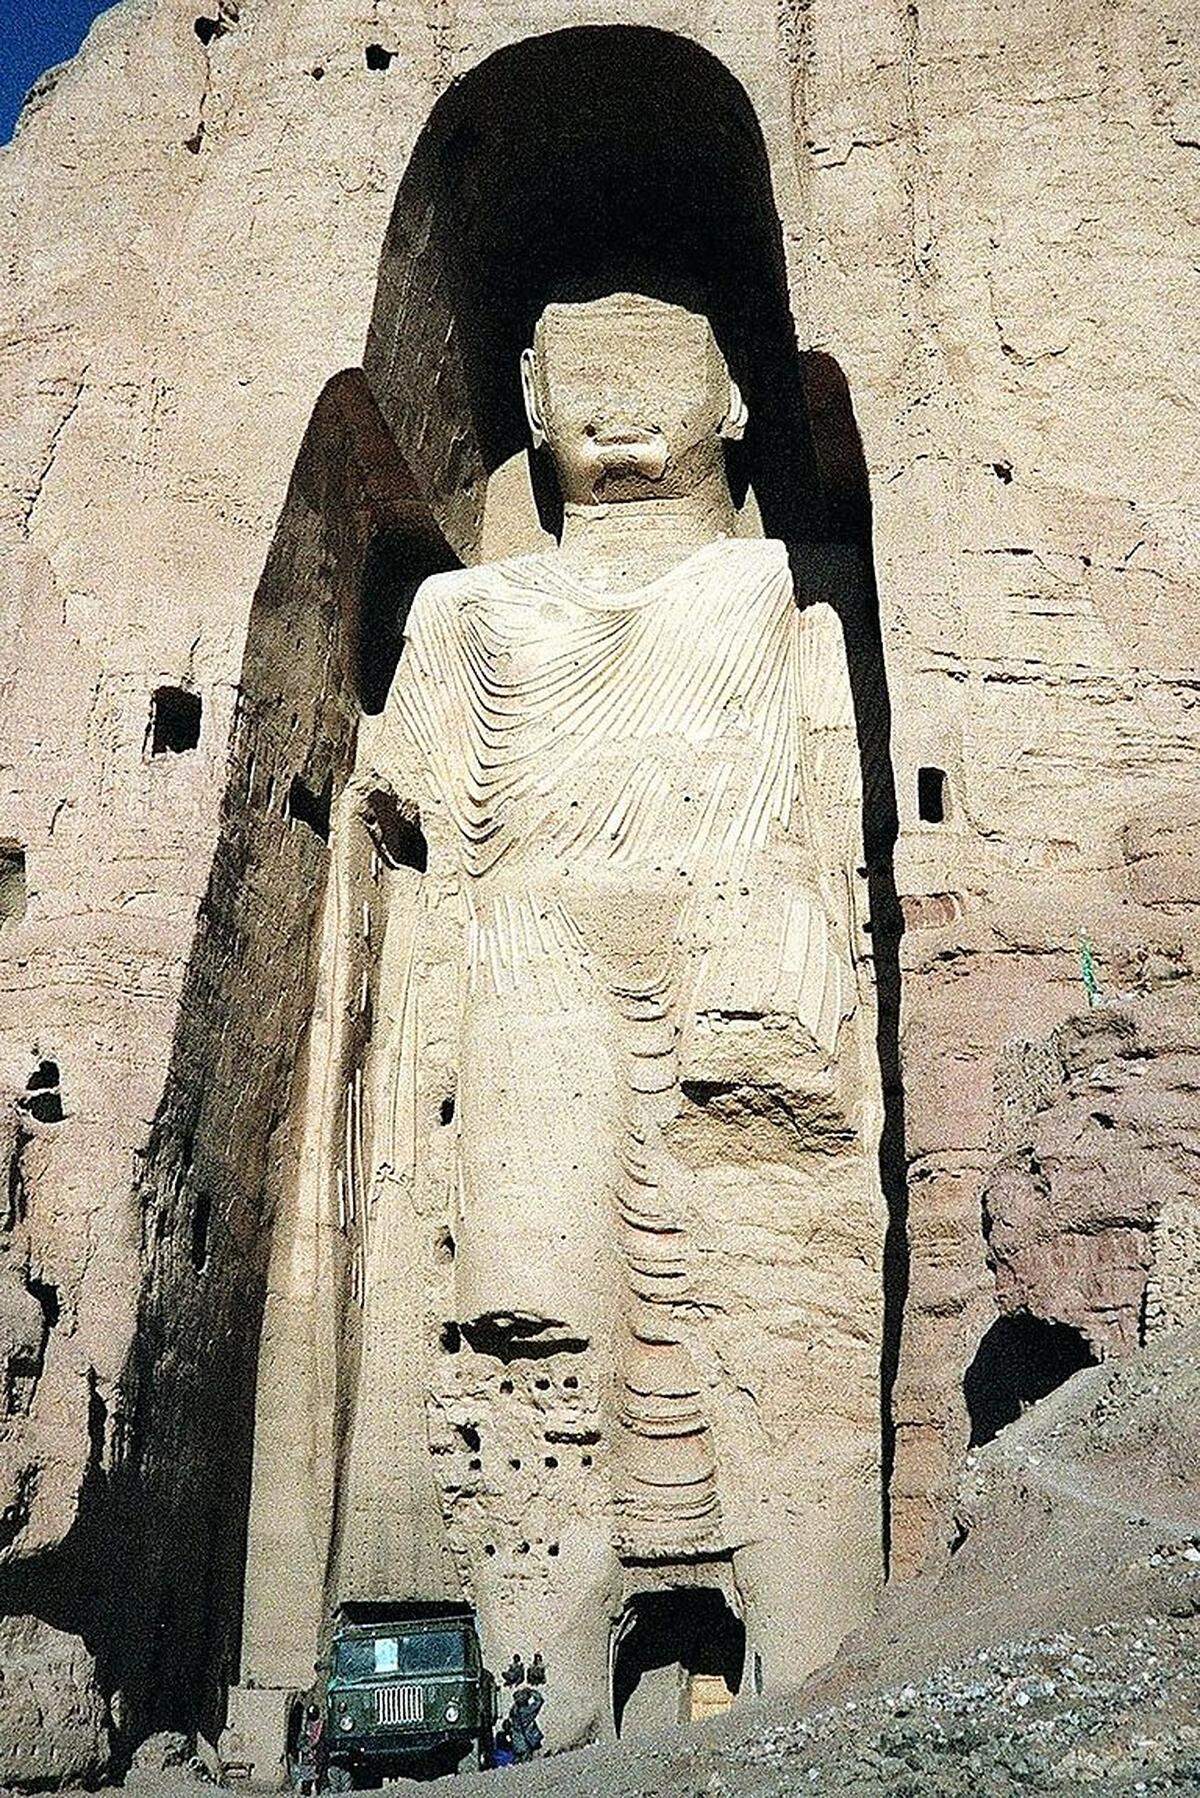 Das Zerstörungswerk der Taliban ging in zwei Schritten vor sich: Zuerst zerschlugen sie im September 1998 den Kopf der kleineren Statue und ließen es zunächst dabei bewenden.